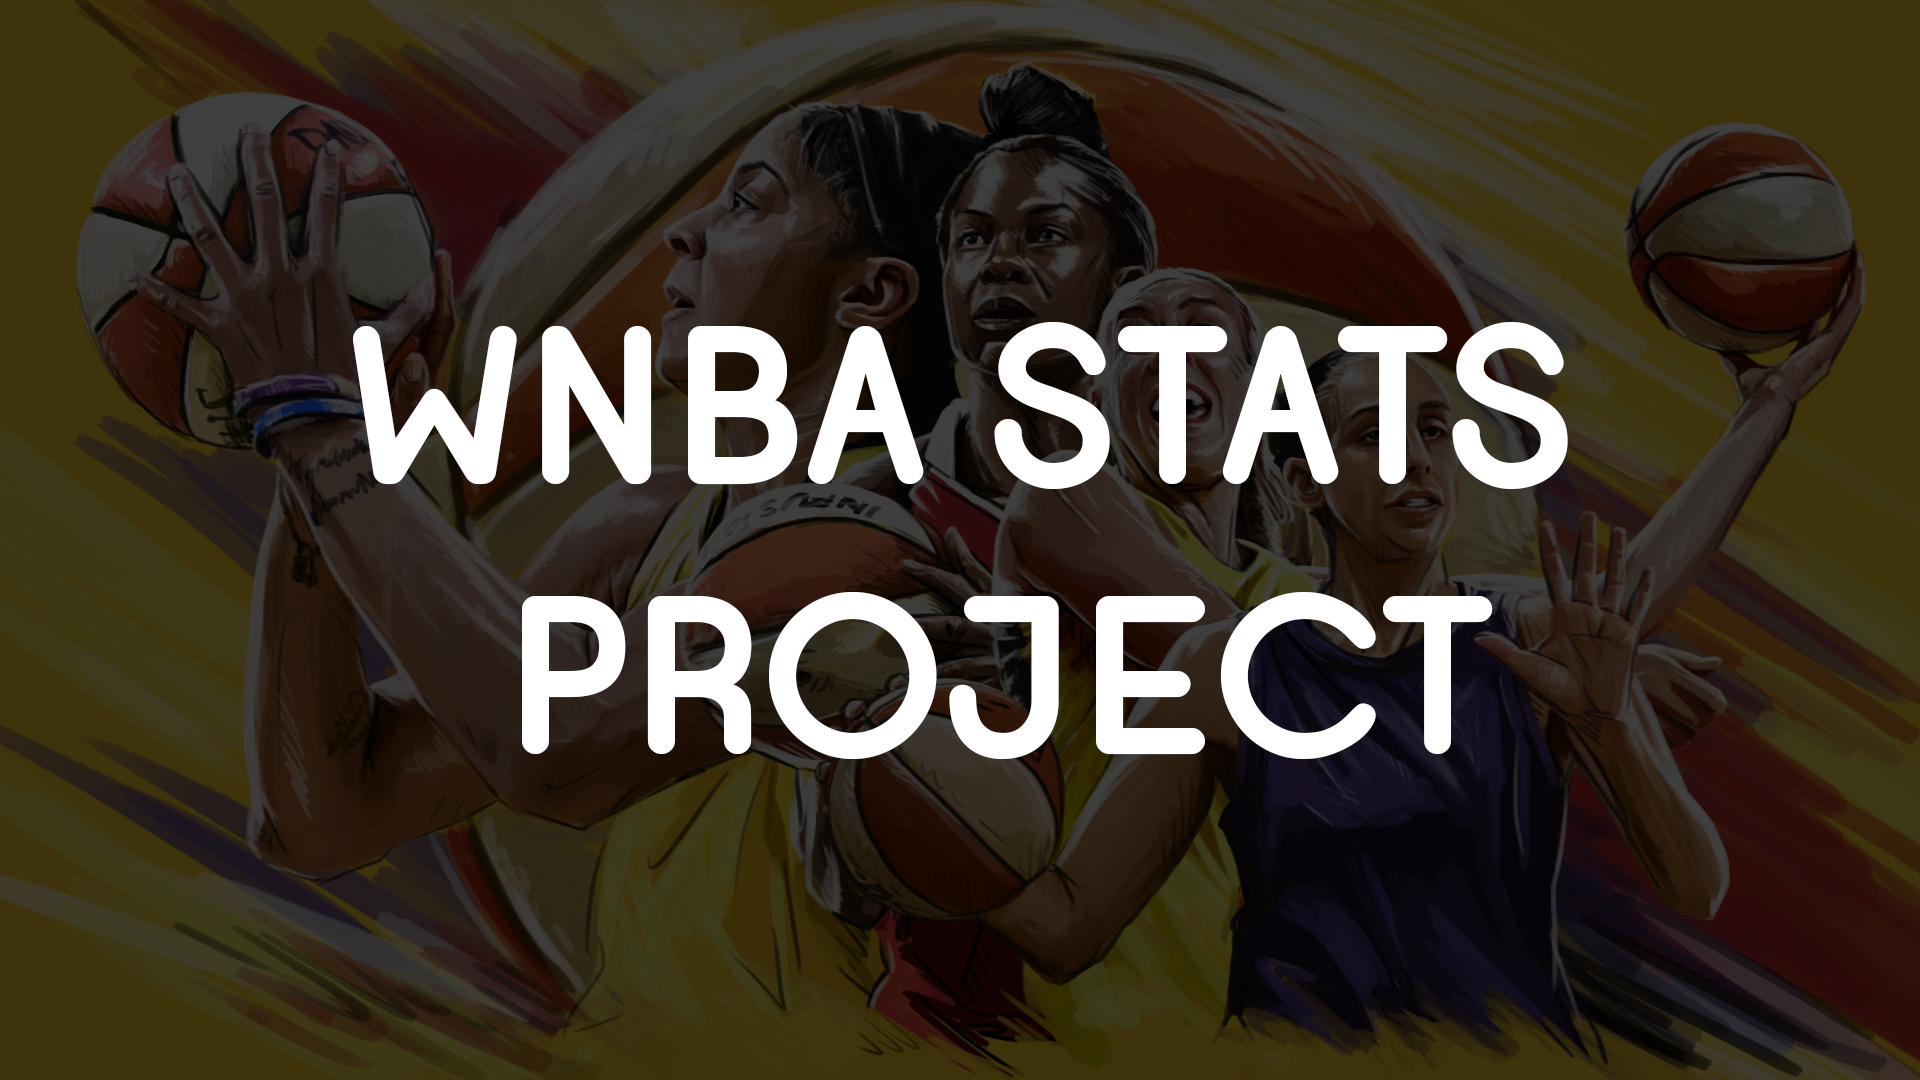 WNBA Statistics Project